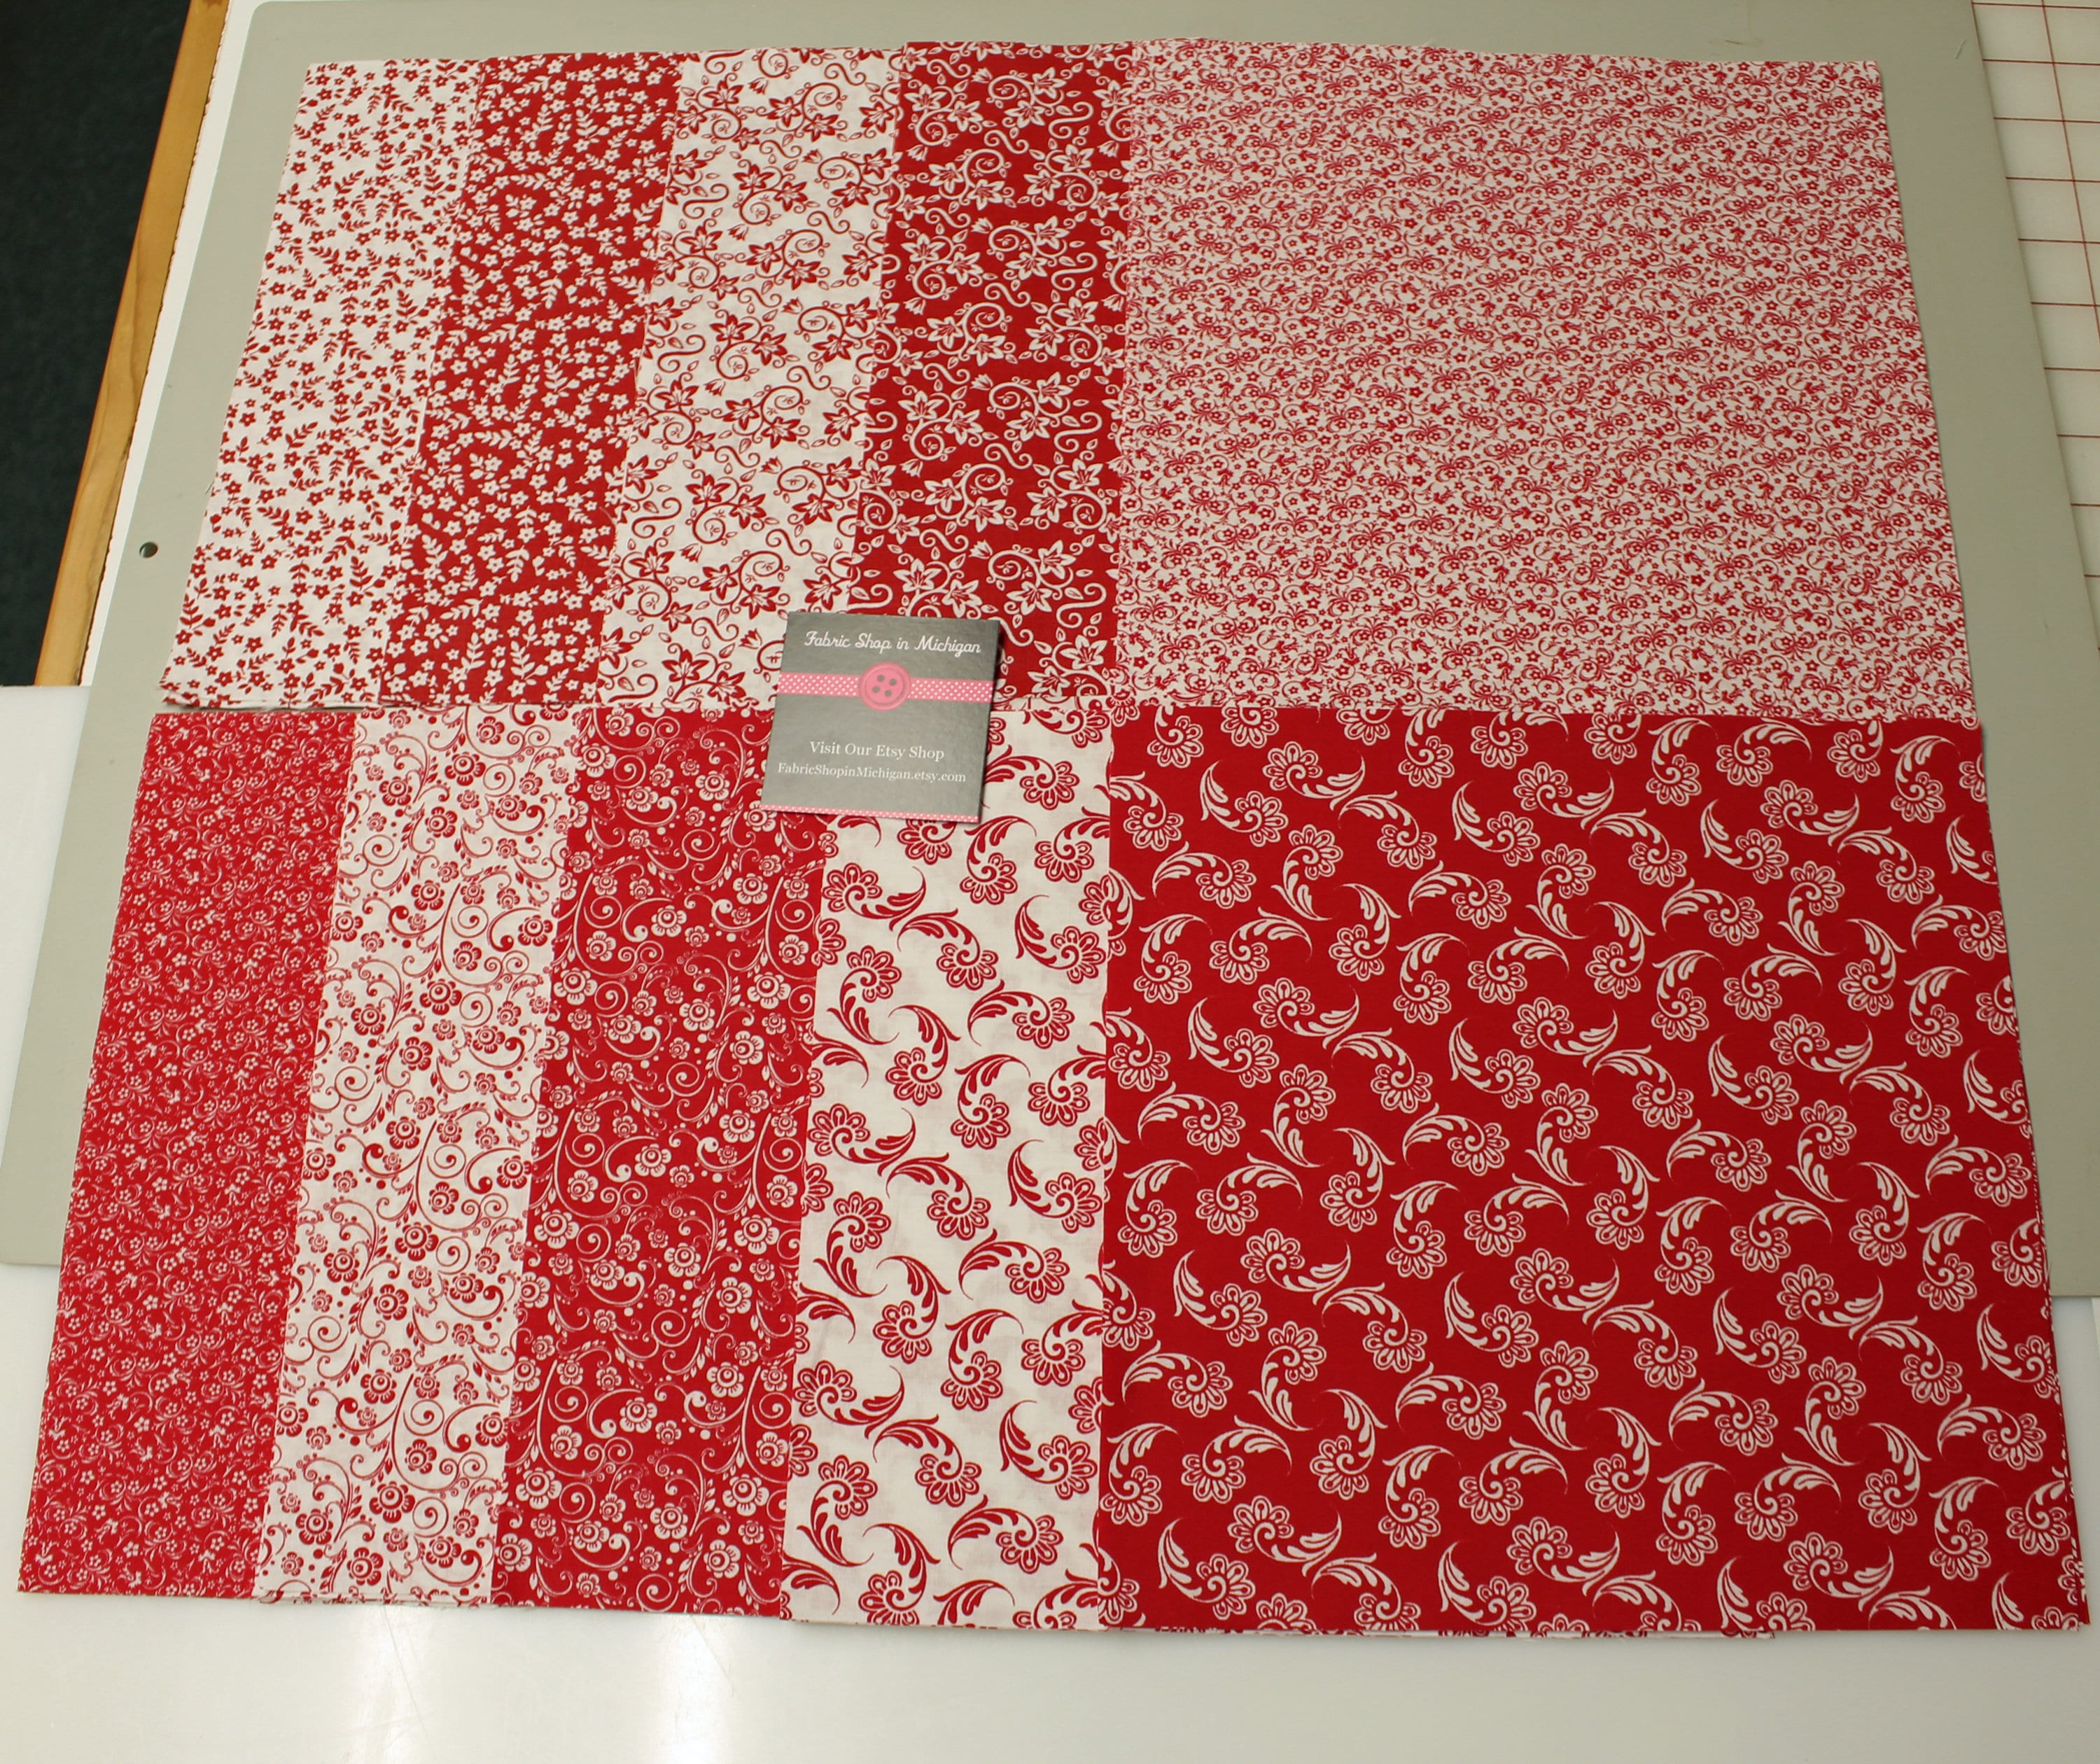 100 Pcs Pre-cut Silk Brocade Fabric Squares Fabric Quiltin Squares